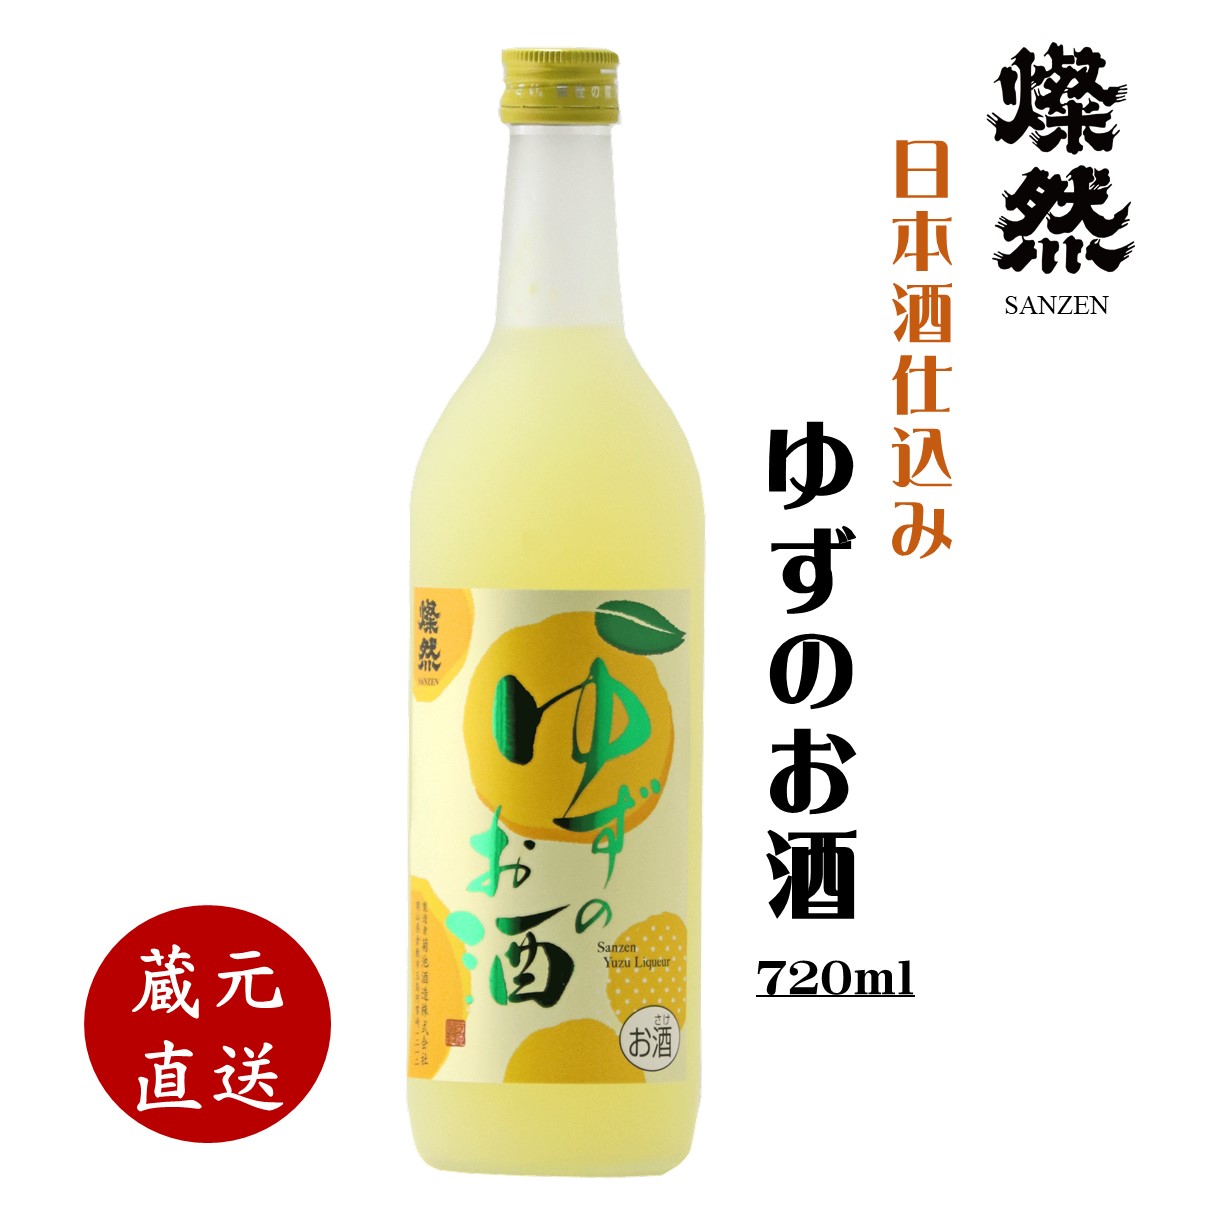 燦然 ゆずのお酒 720ml 柚子 ゆず酒 日本...の商品画像